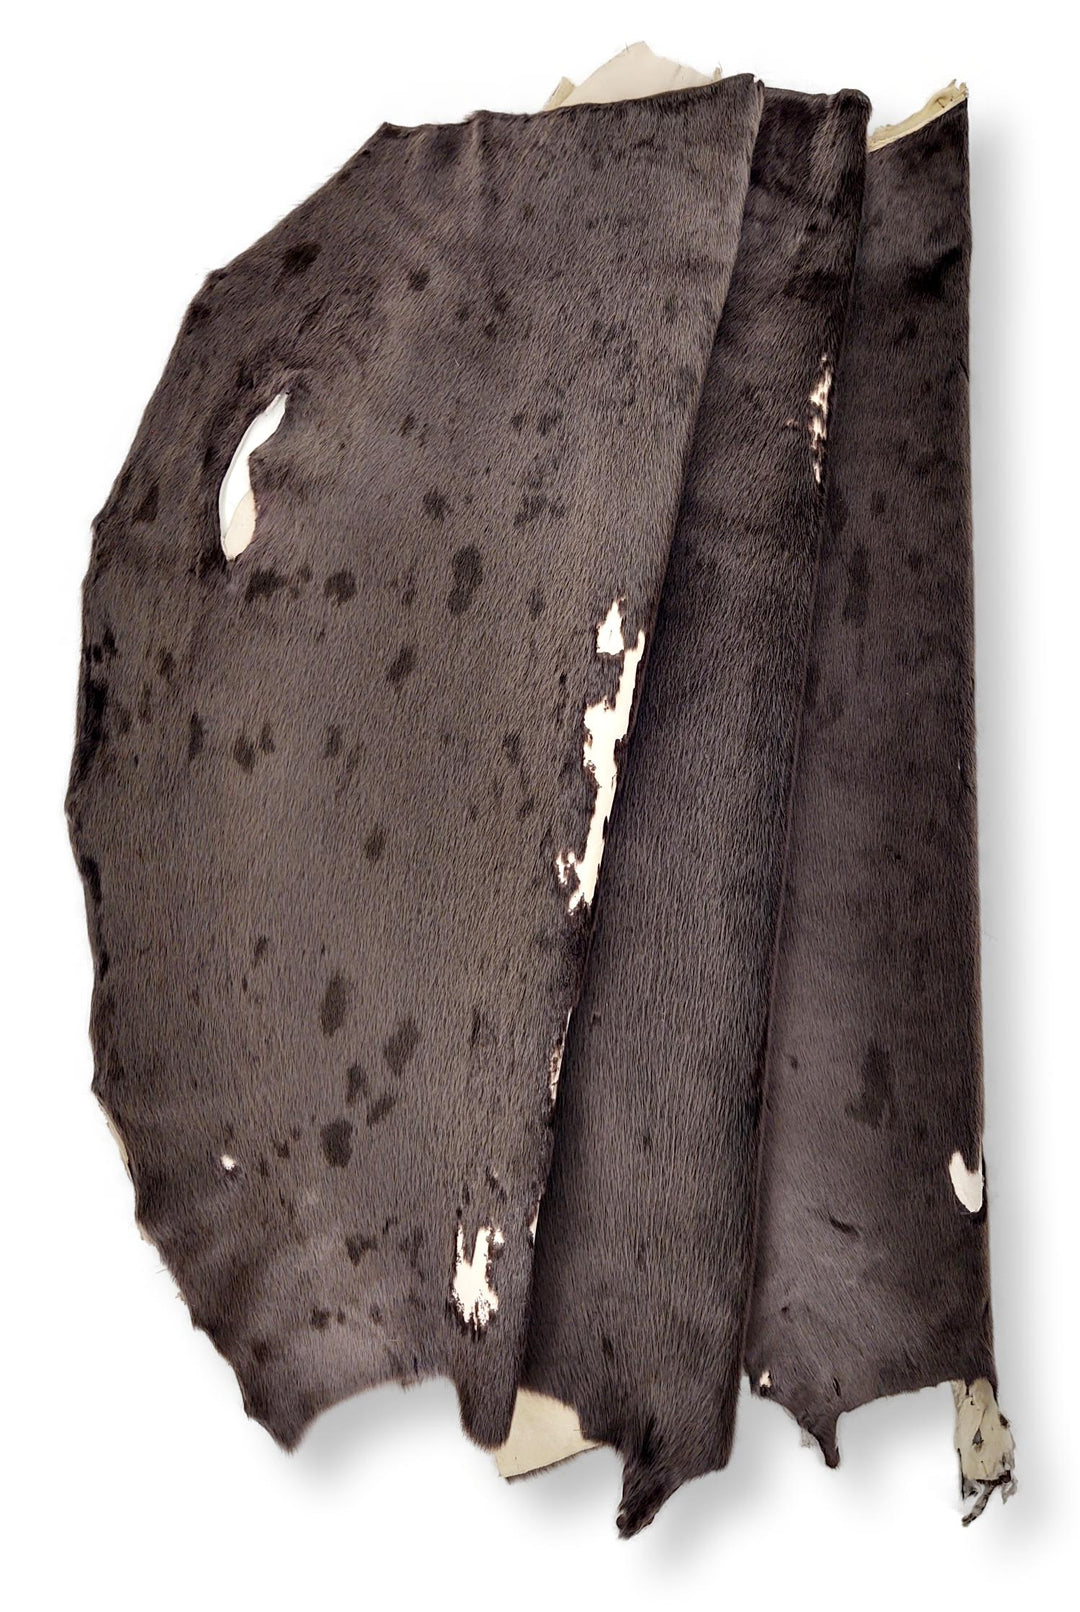 Harp Seal Cacao - Klädd pälsskinn - Päls